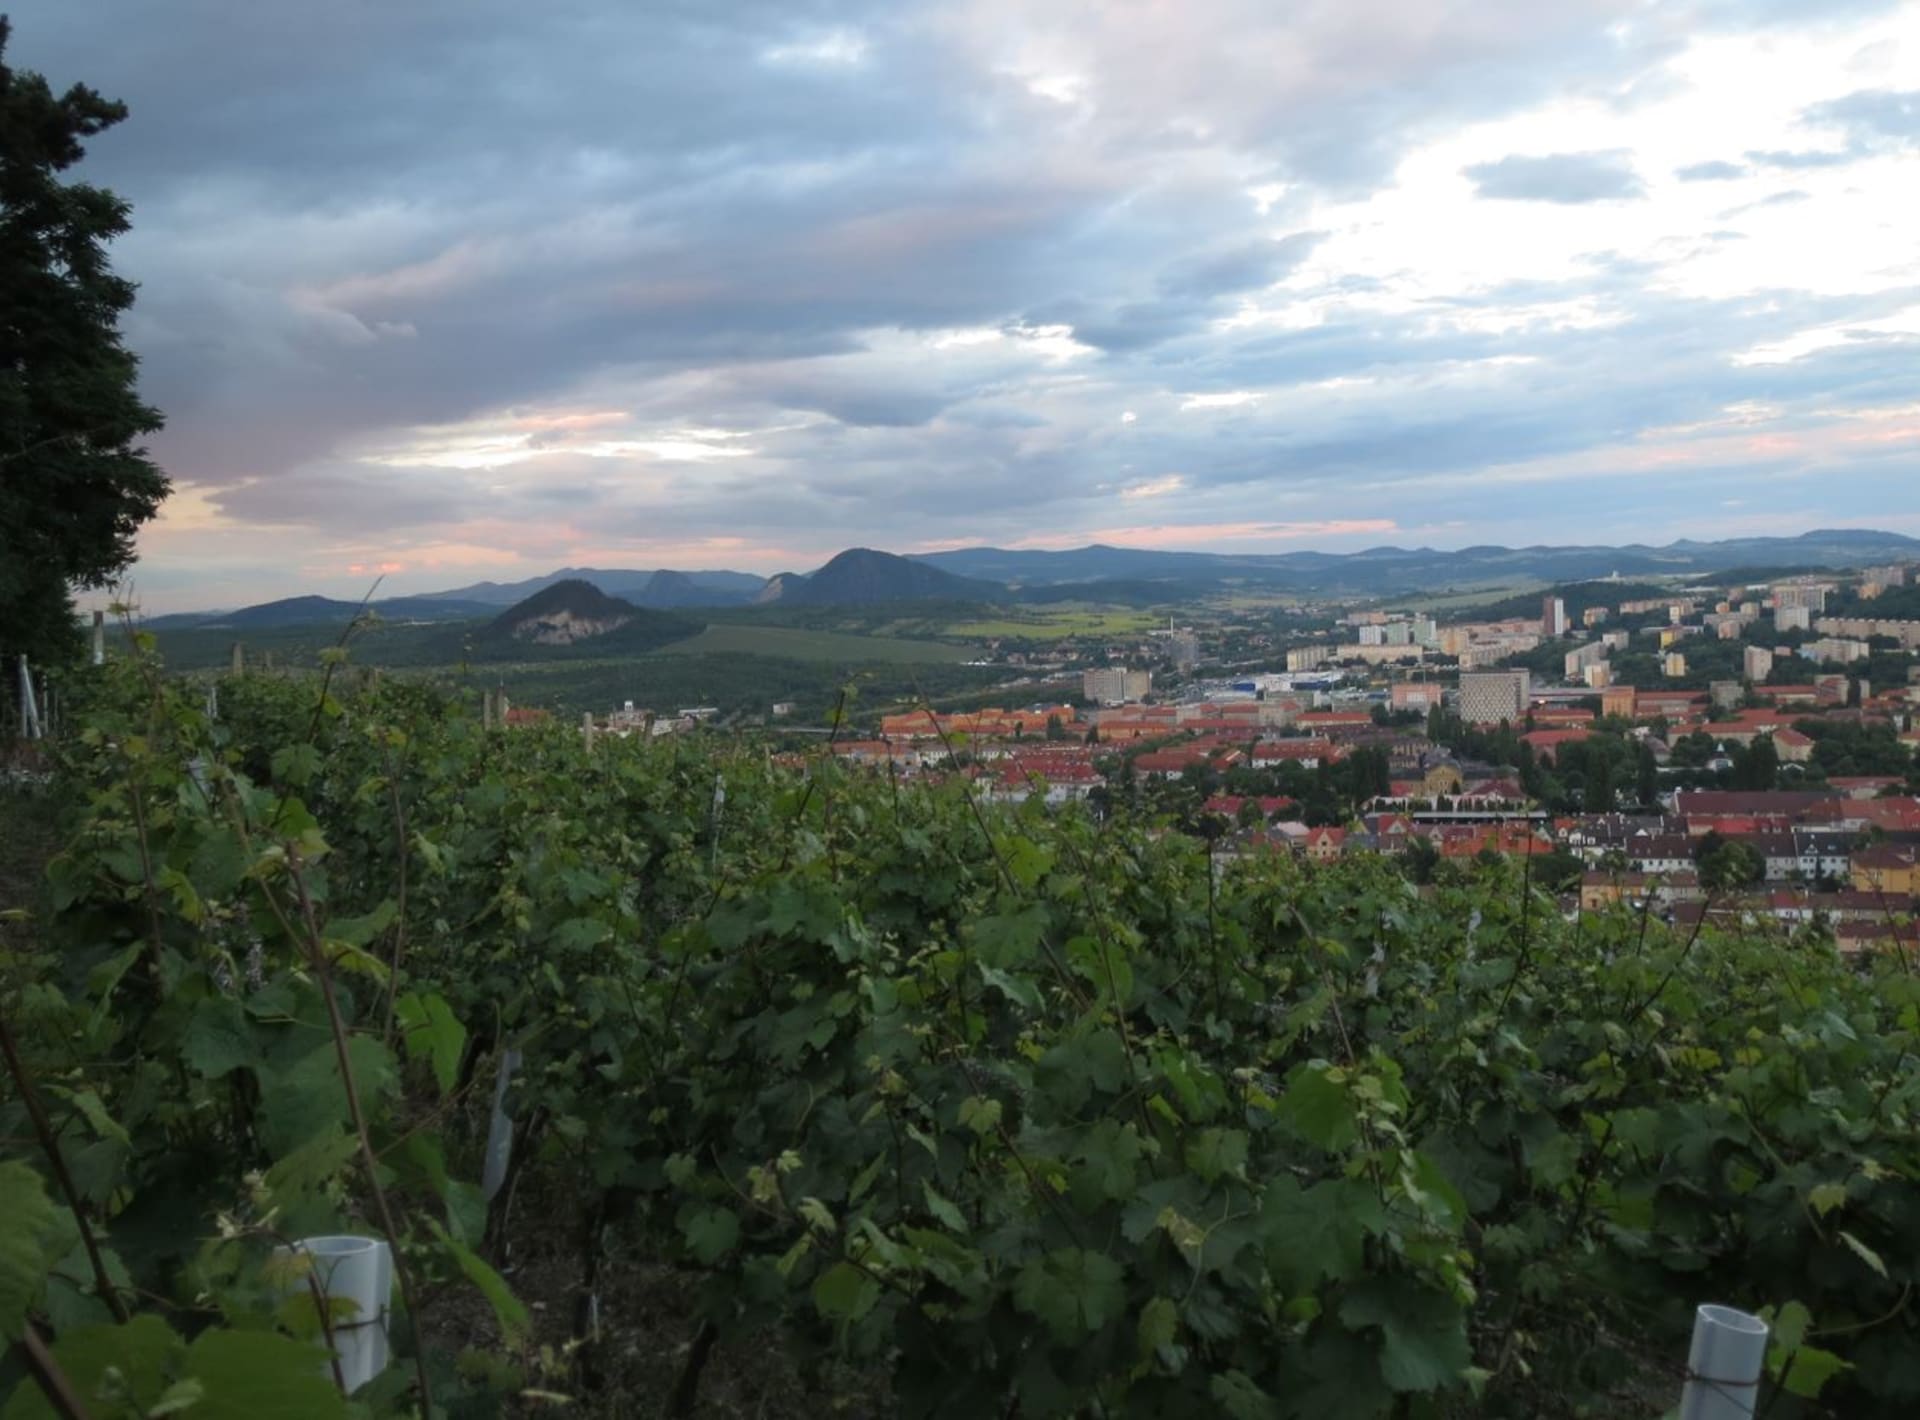 Vinařství má na Mostecku dlouhou tradici